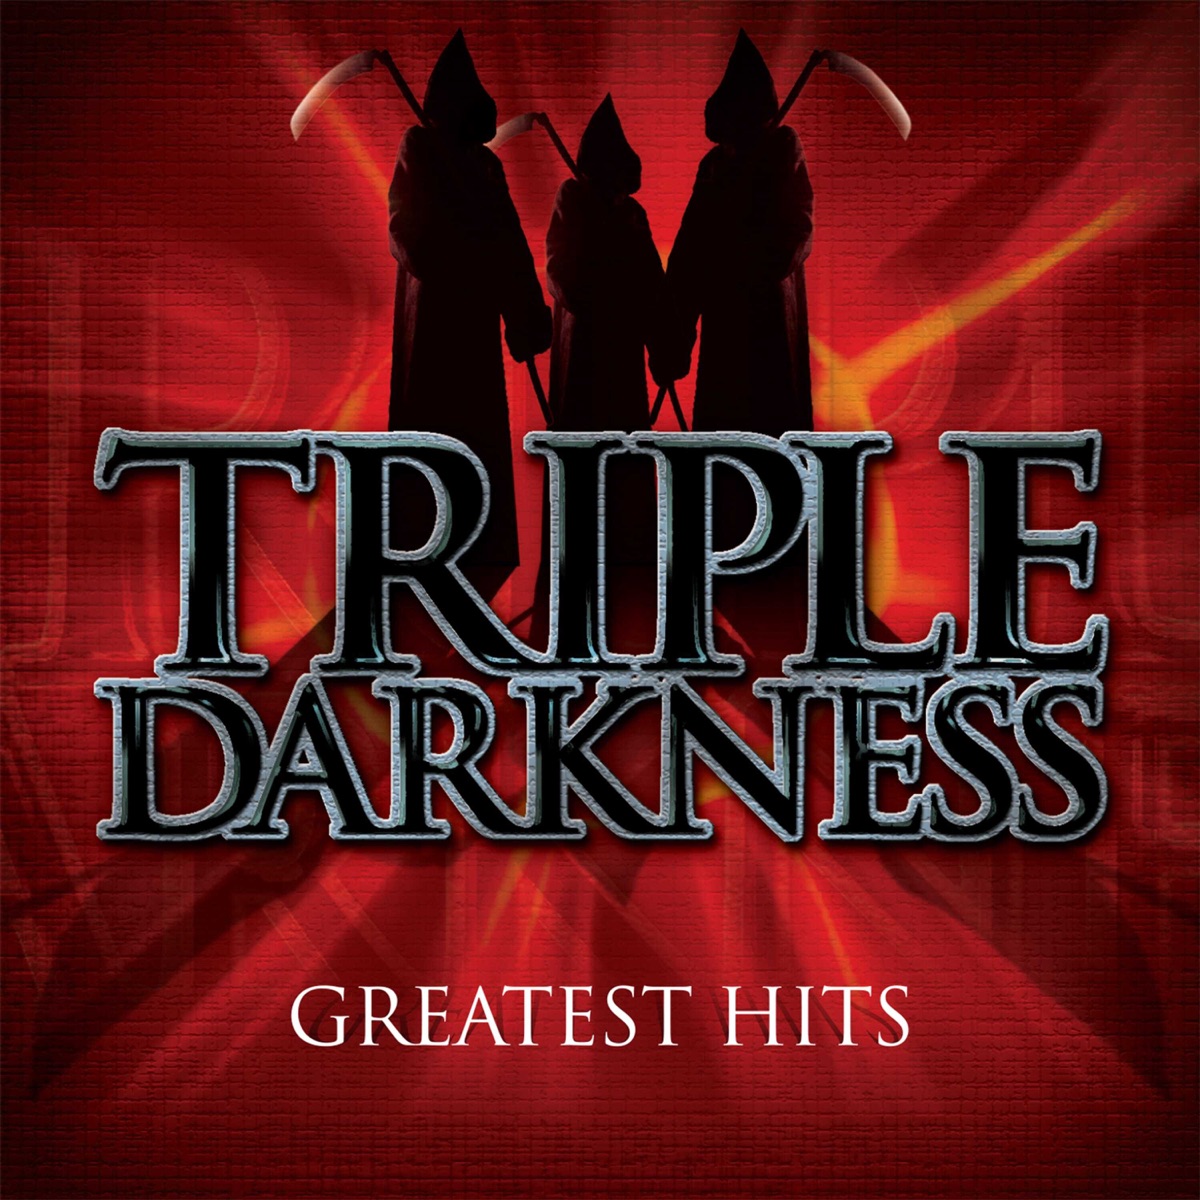 Darker Than Black - Album by Triple Darkness - Apple Music